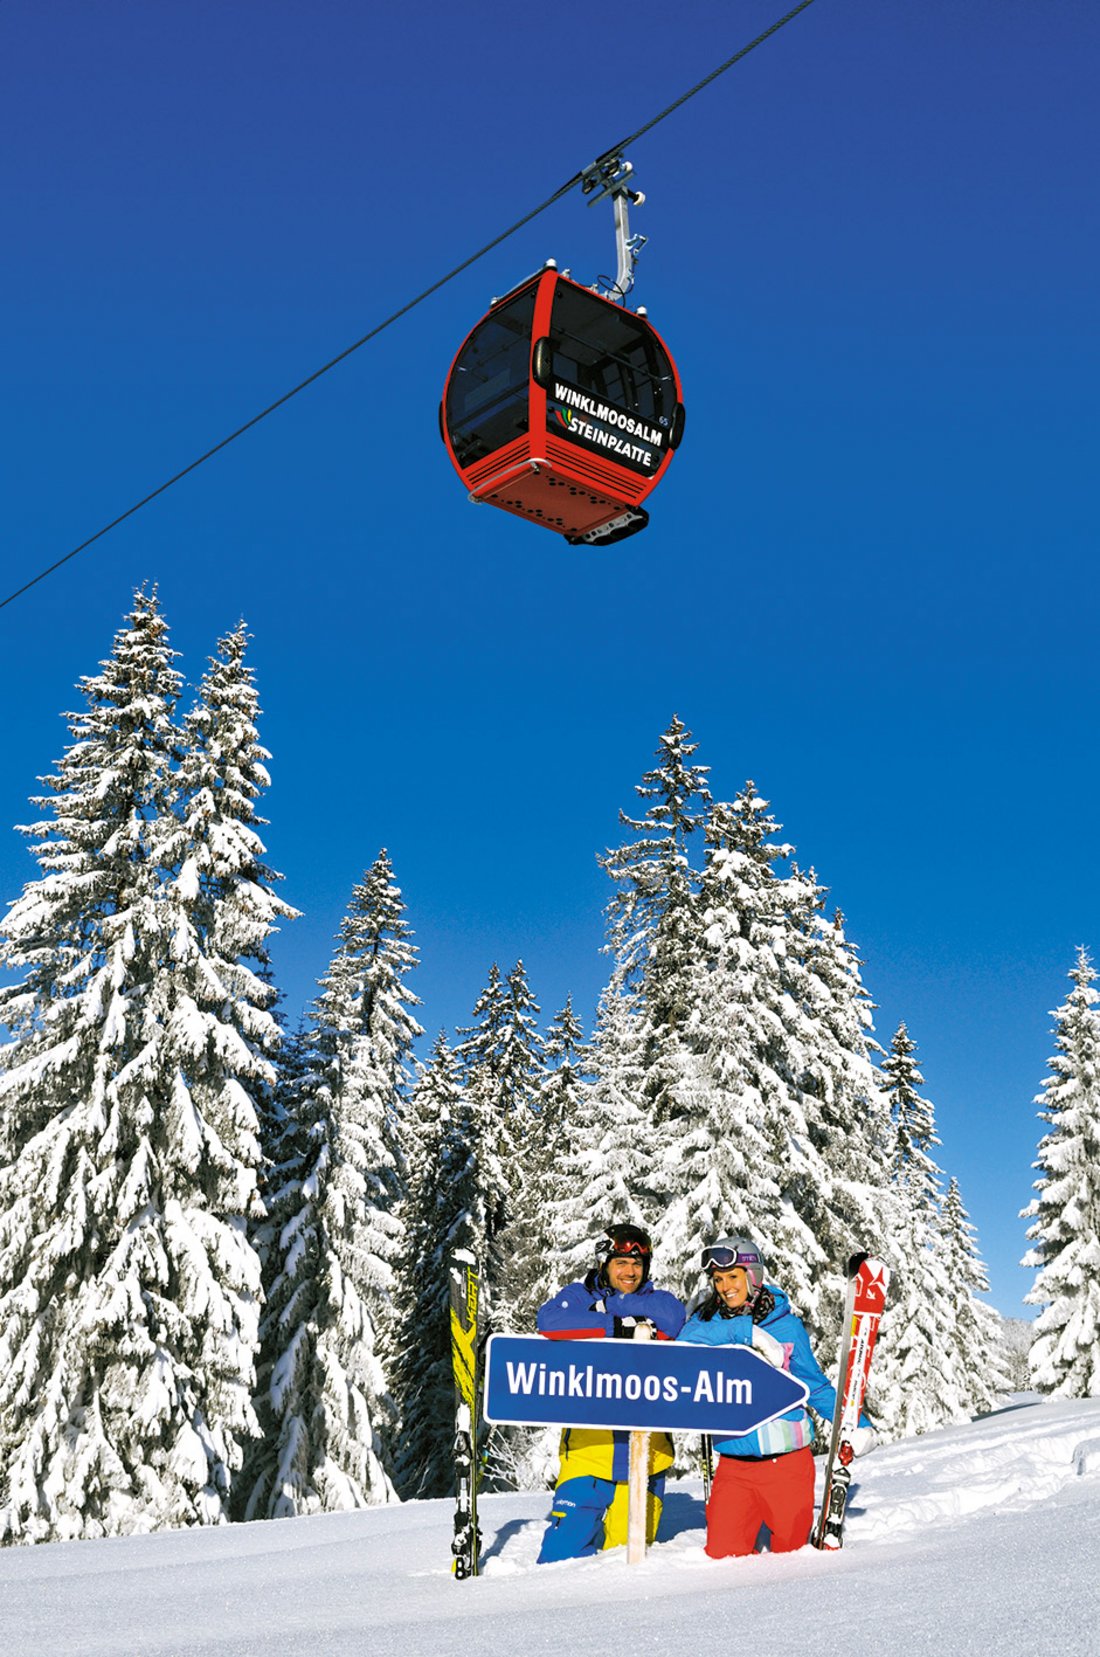 Gondola to the Winklmoos-Alm ski area